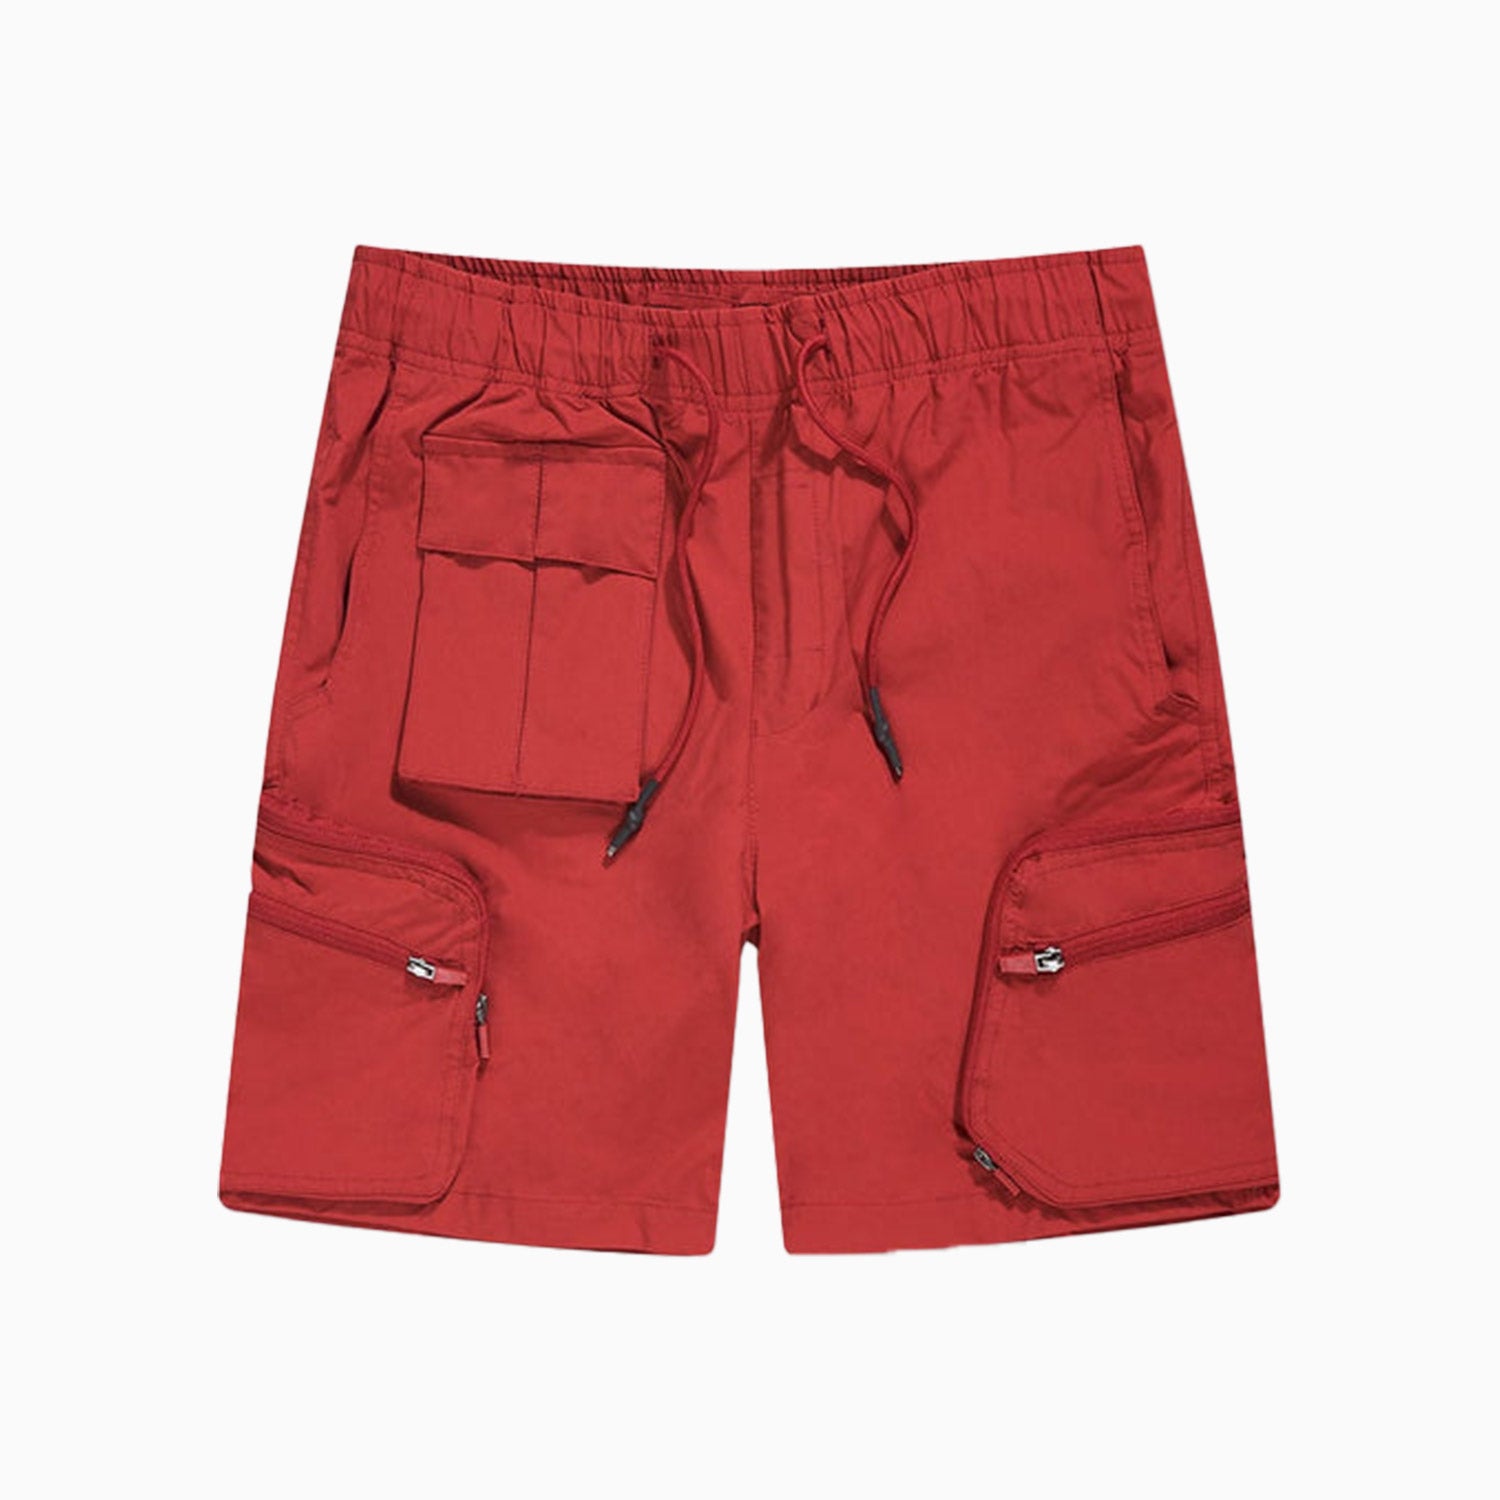 jordan-craig-mens-retro-altitude-cargo-shorts-4420-red